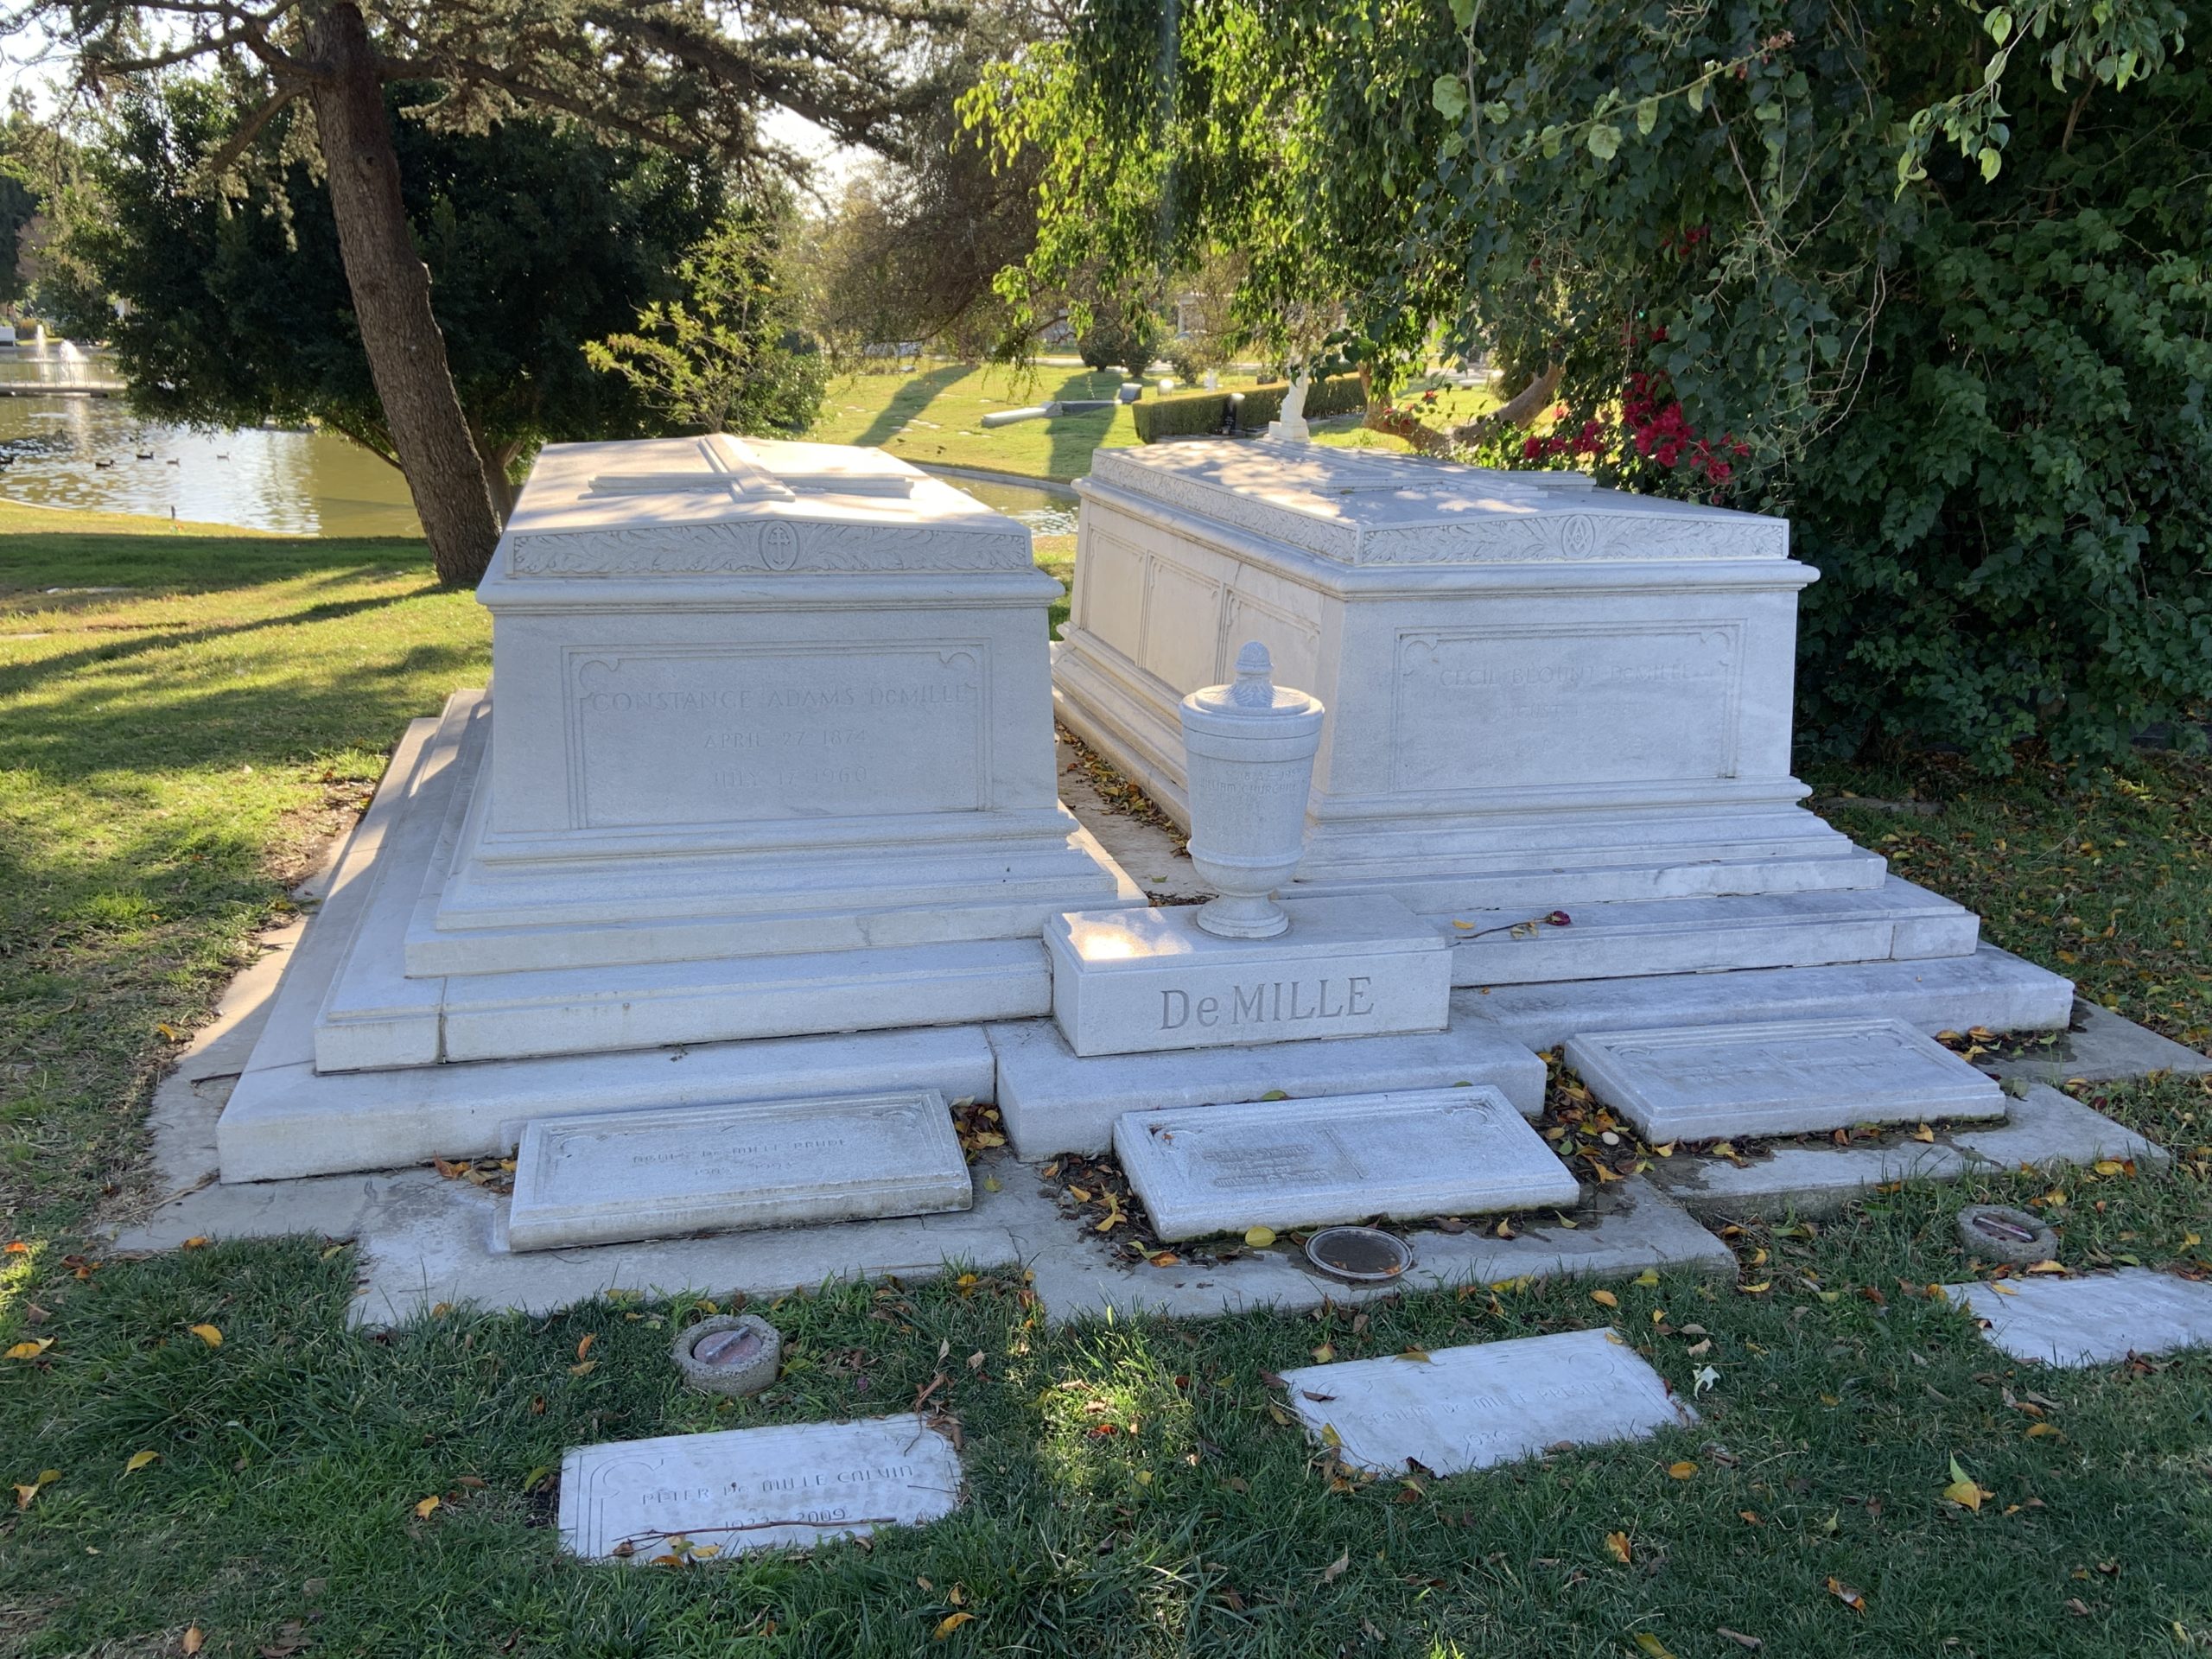 Cecil B DeMille Grave